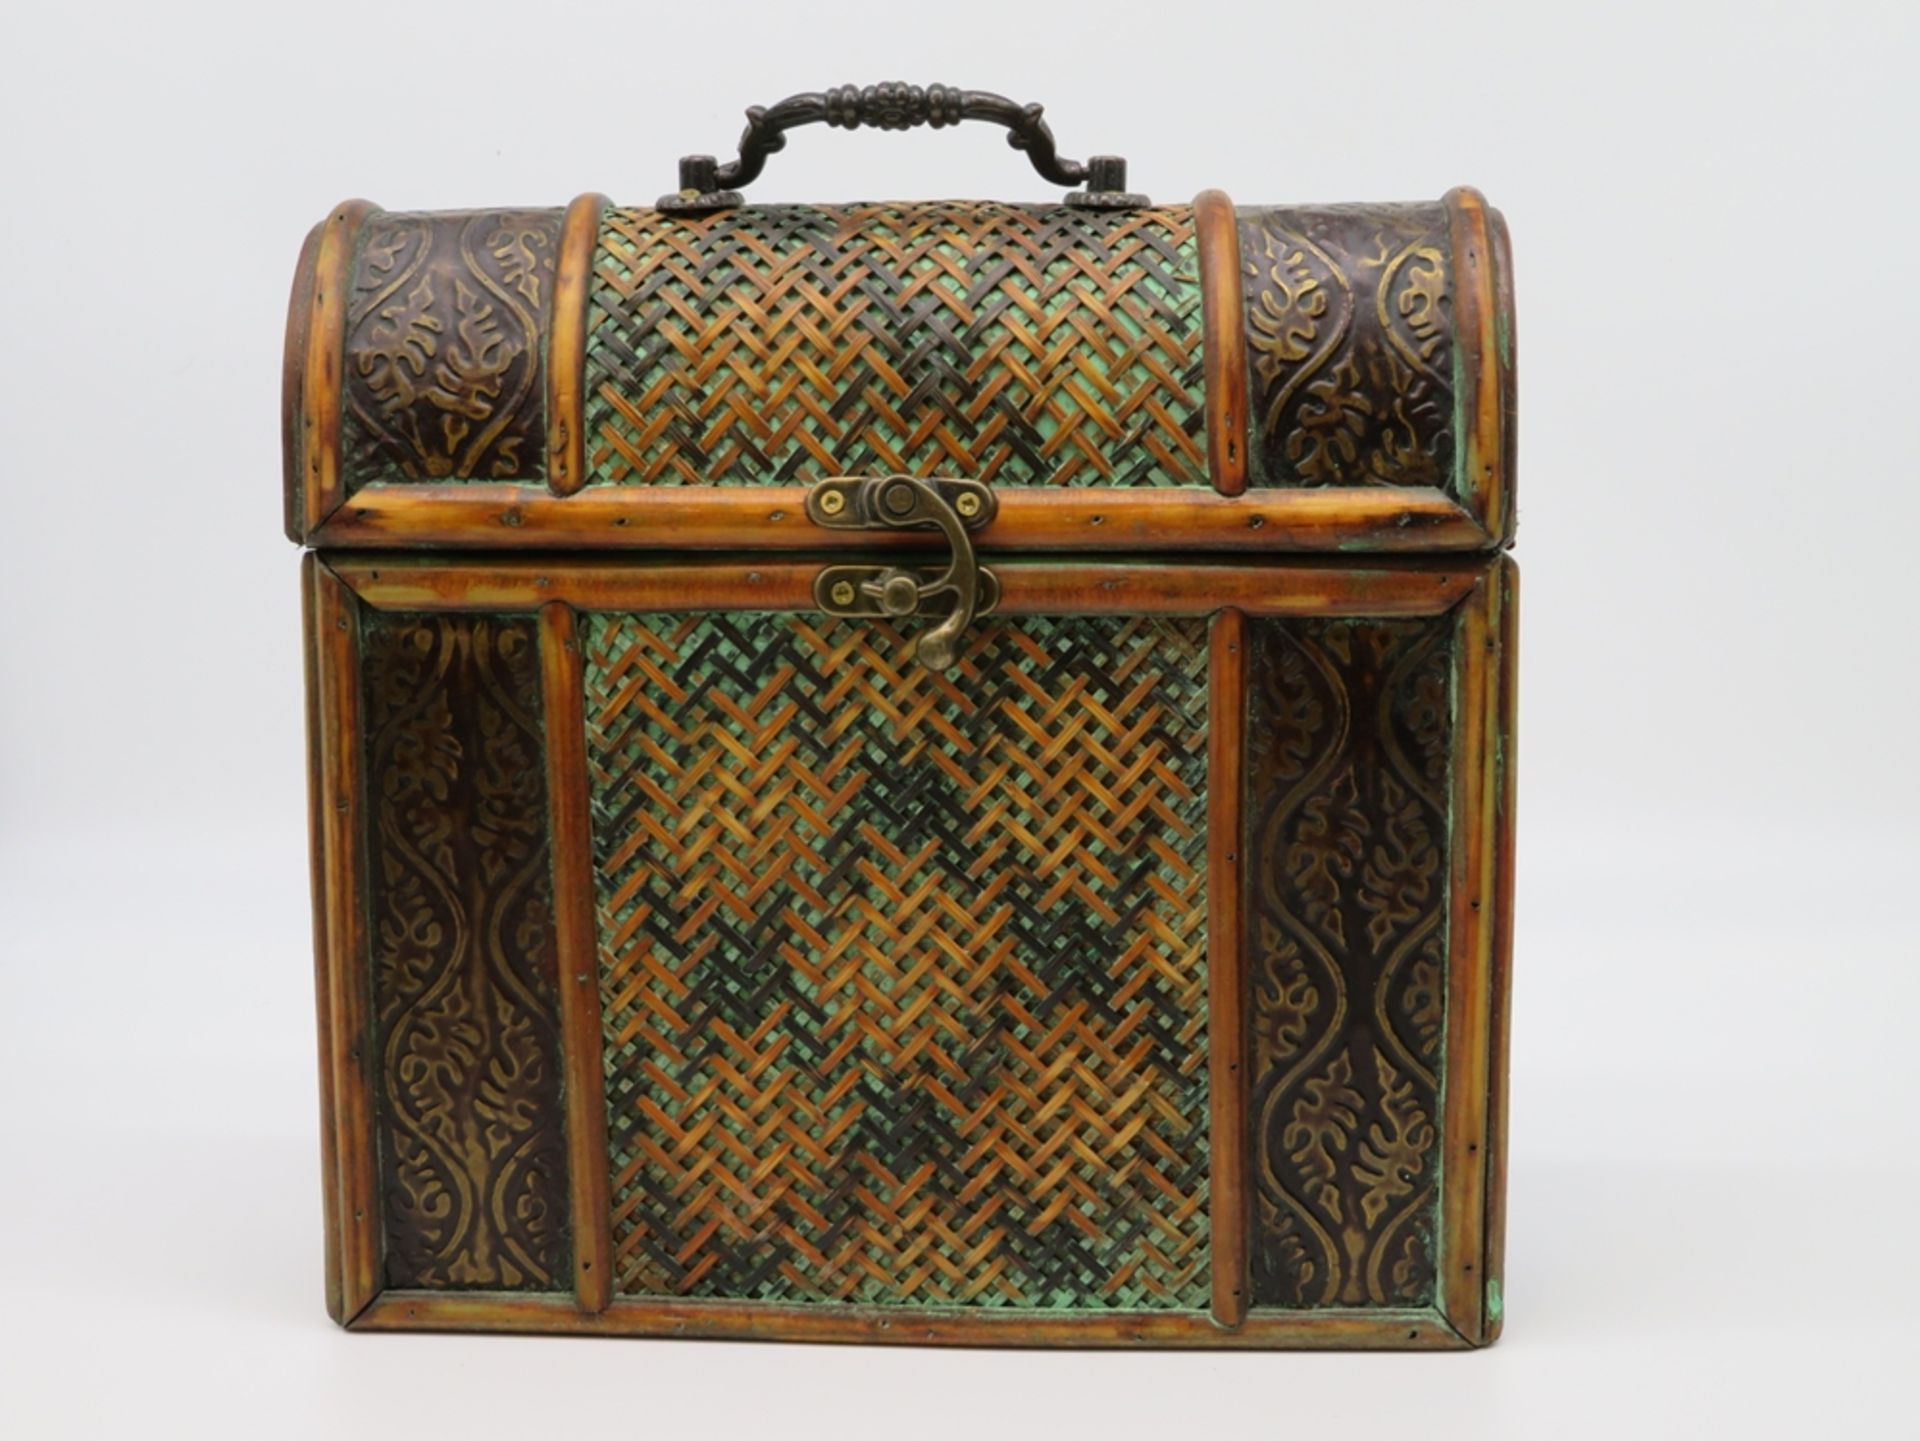 Koffer, Bast und Metall, 31 x 27,5 x 10 cm.